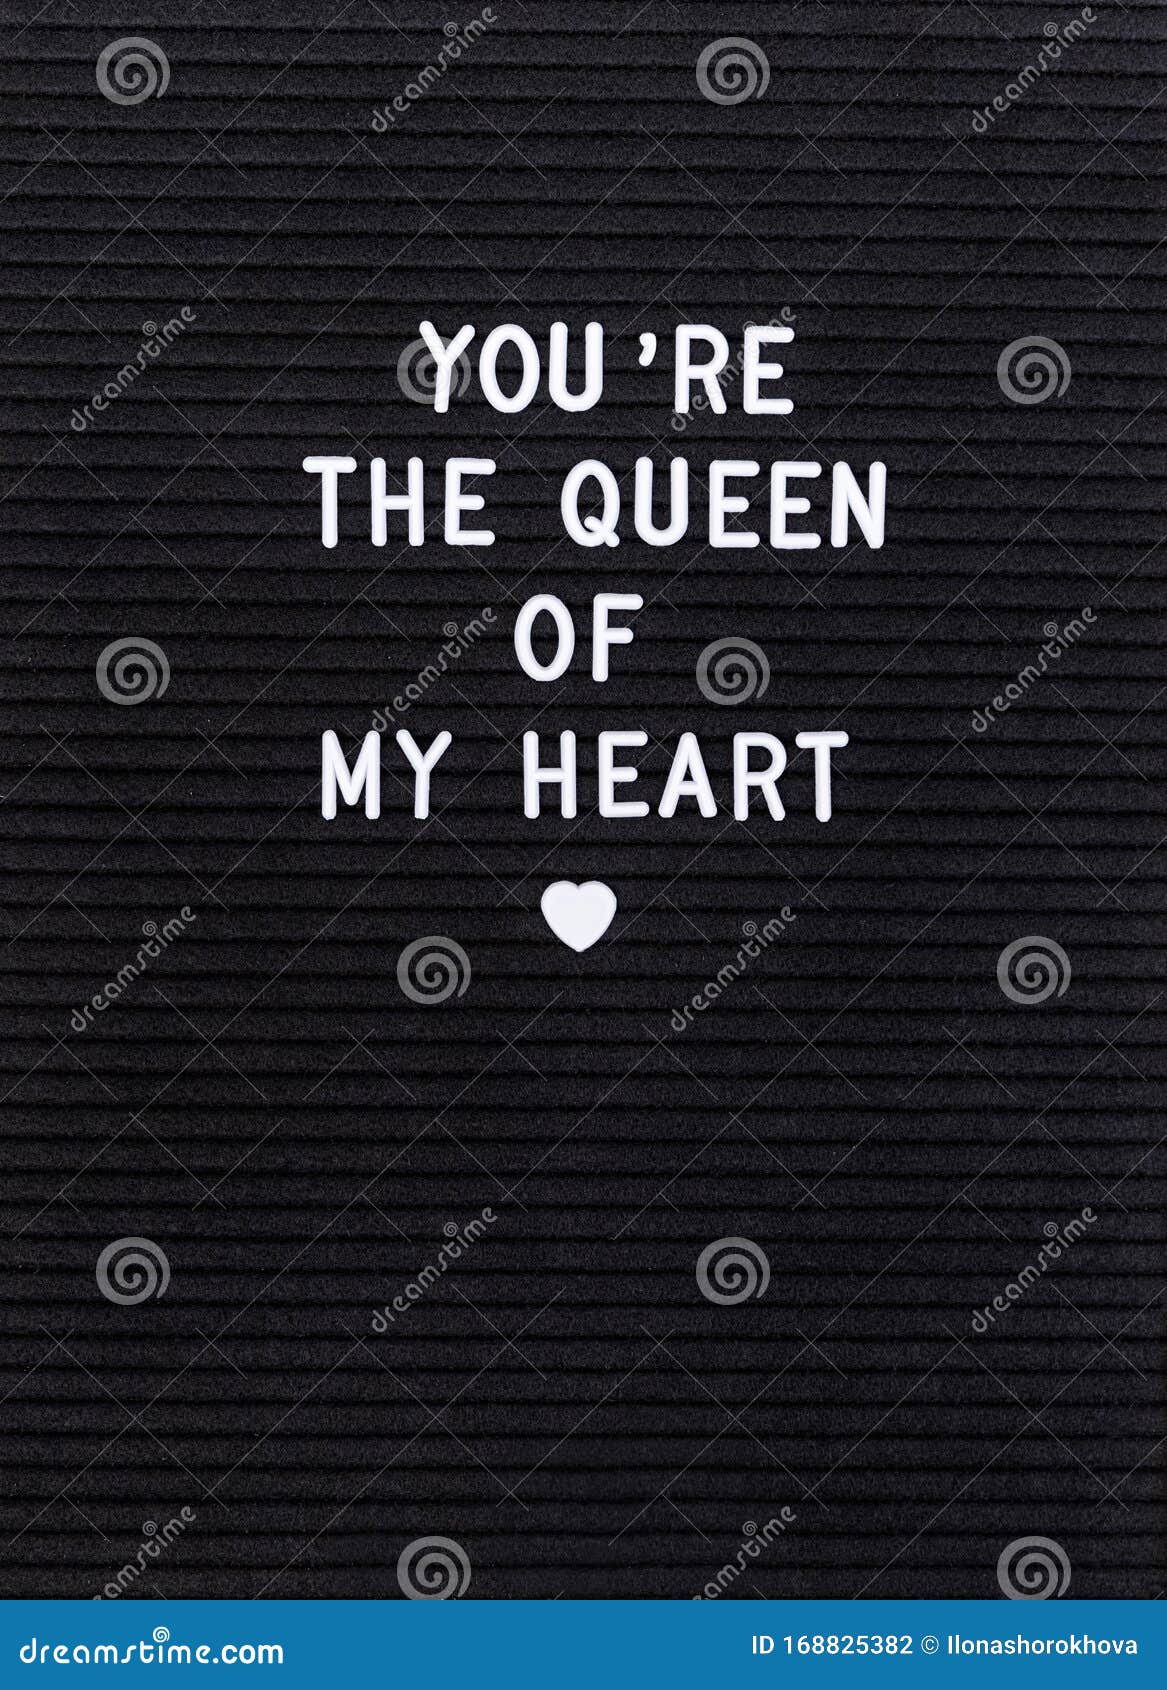 Queen black heart Hearts